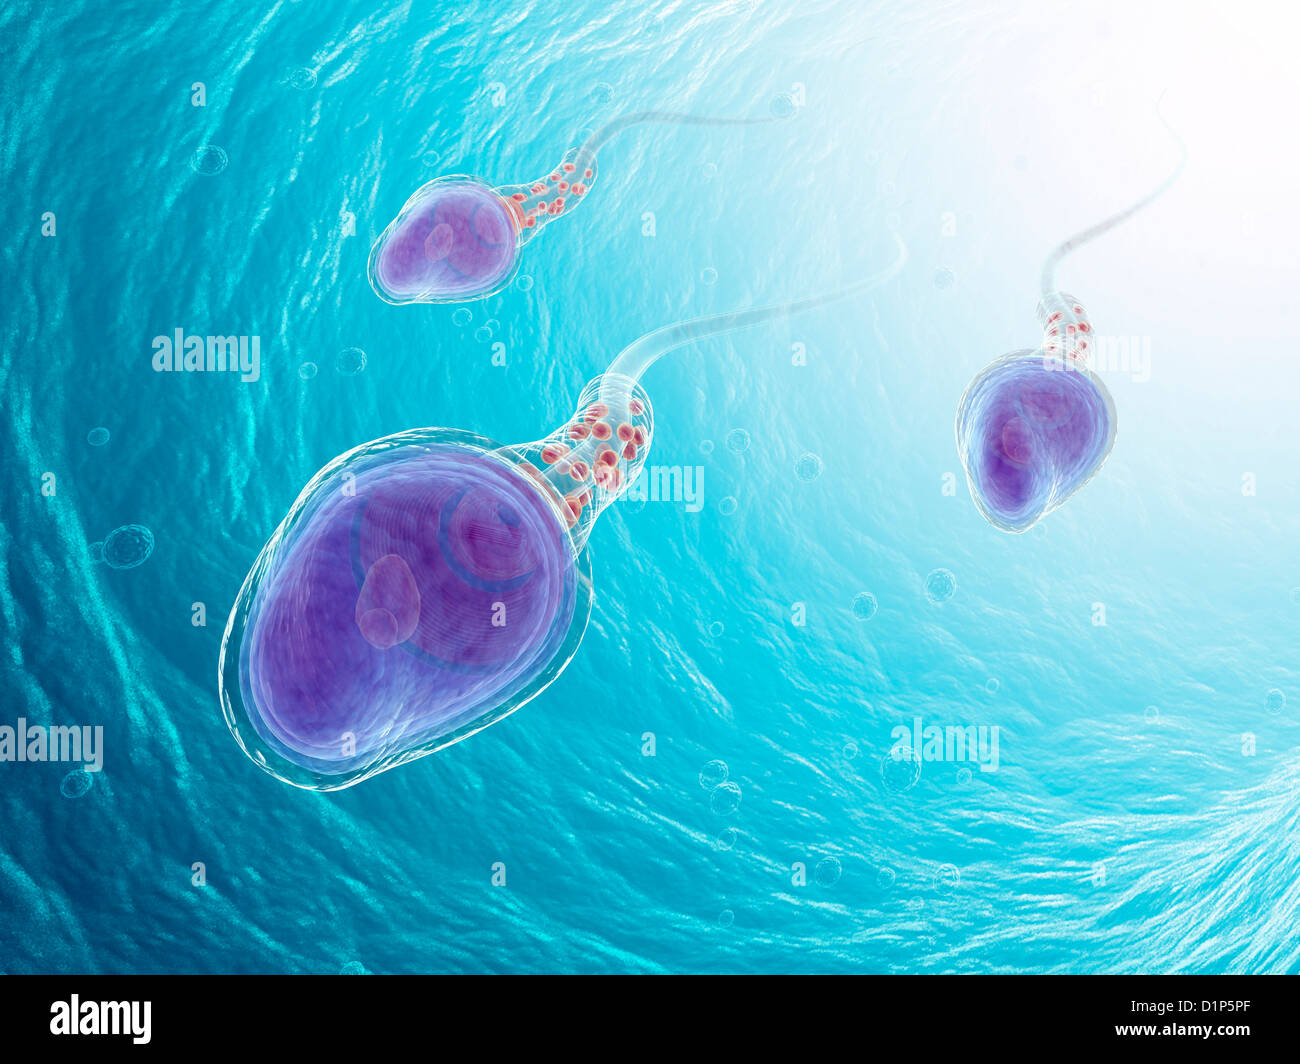 Menschliche Samenzellen, artwork Stockfoto